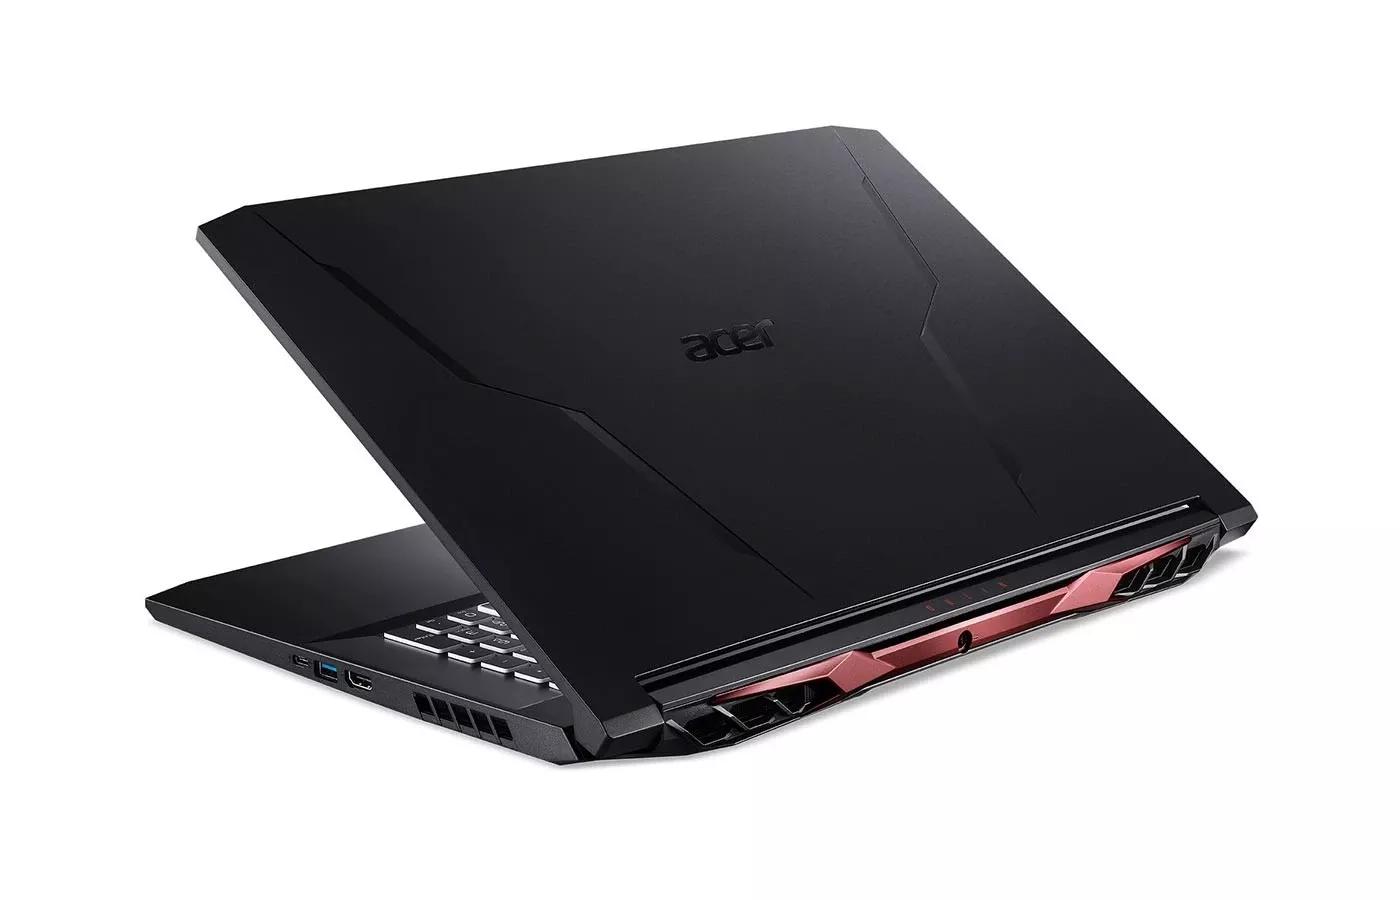 Acer Nitro 5 2021 Intel i5 10Th Gen | RTX 3060 | 8GB RAM | 512 SSD | 15.6" FHD 144Hz display | 1 Year Warranty